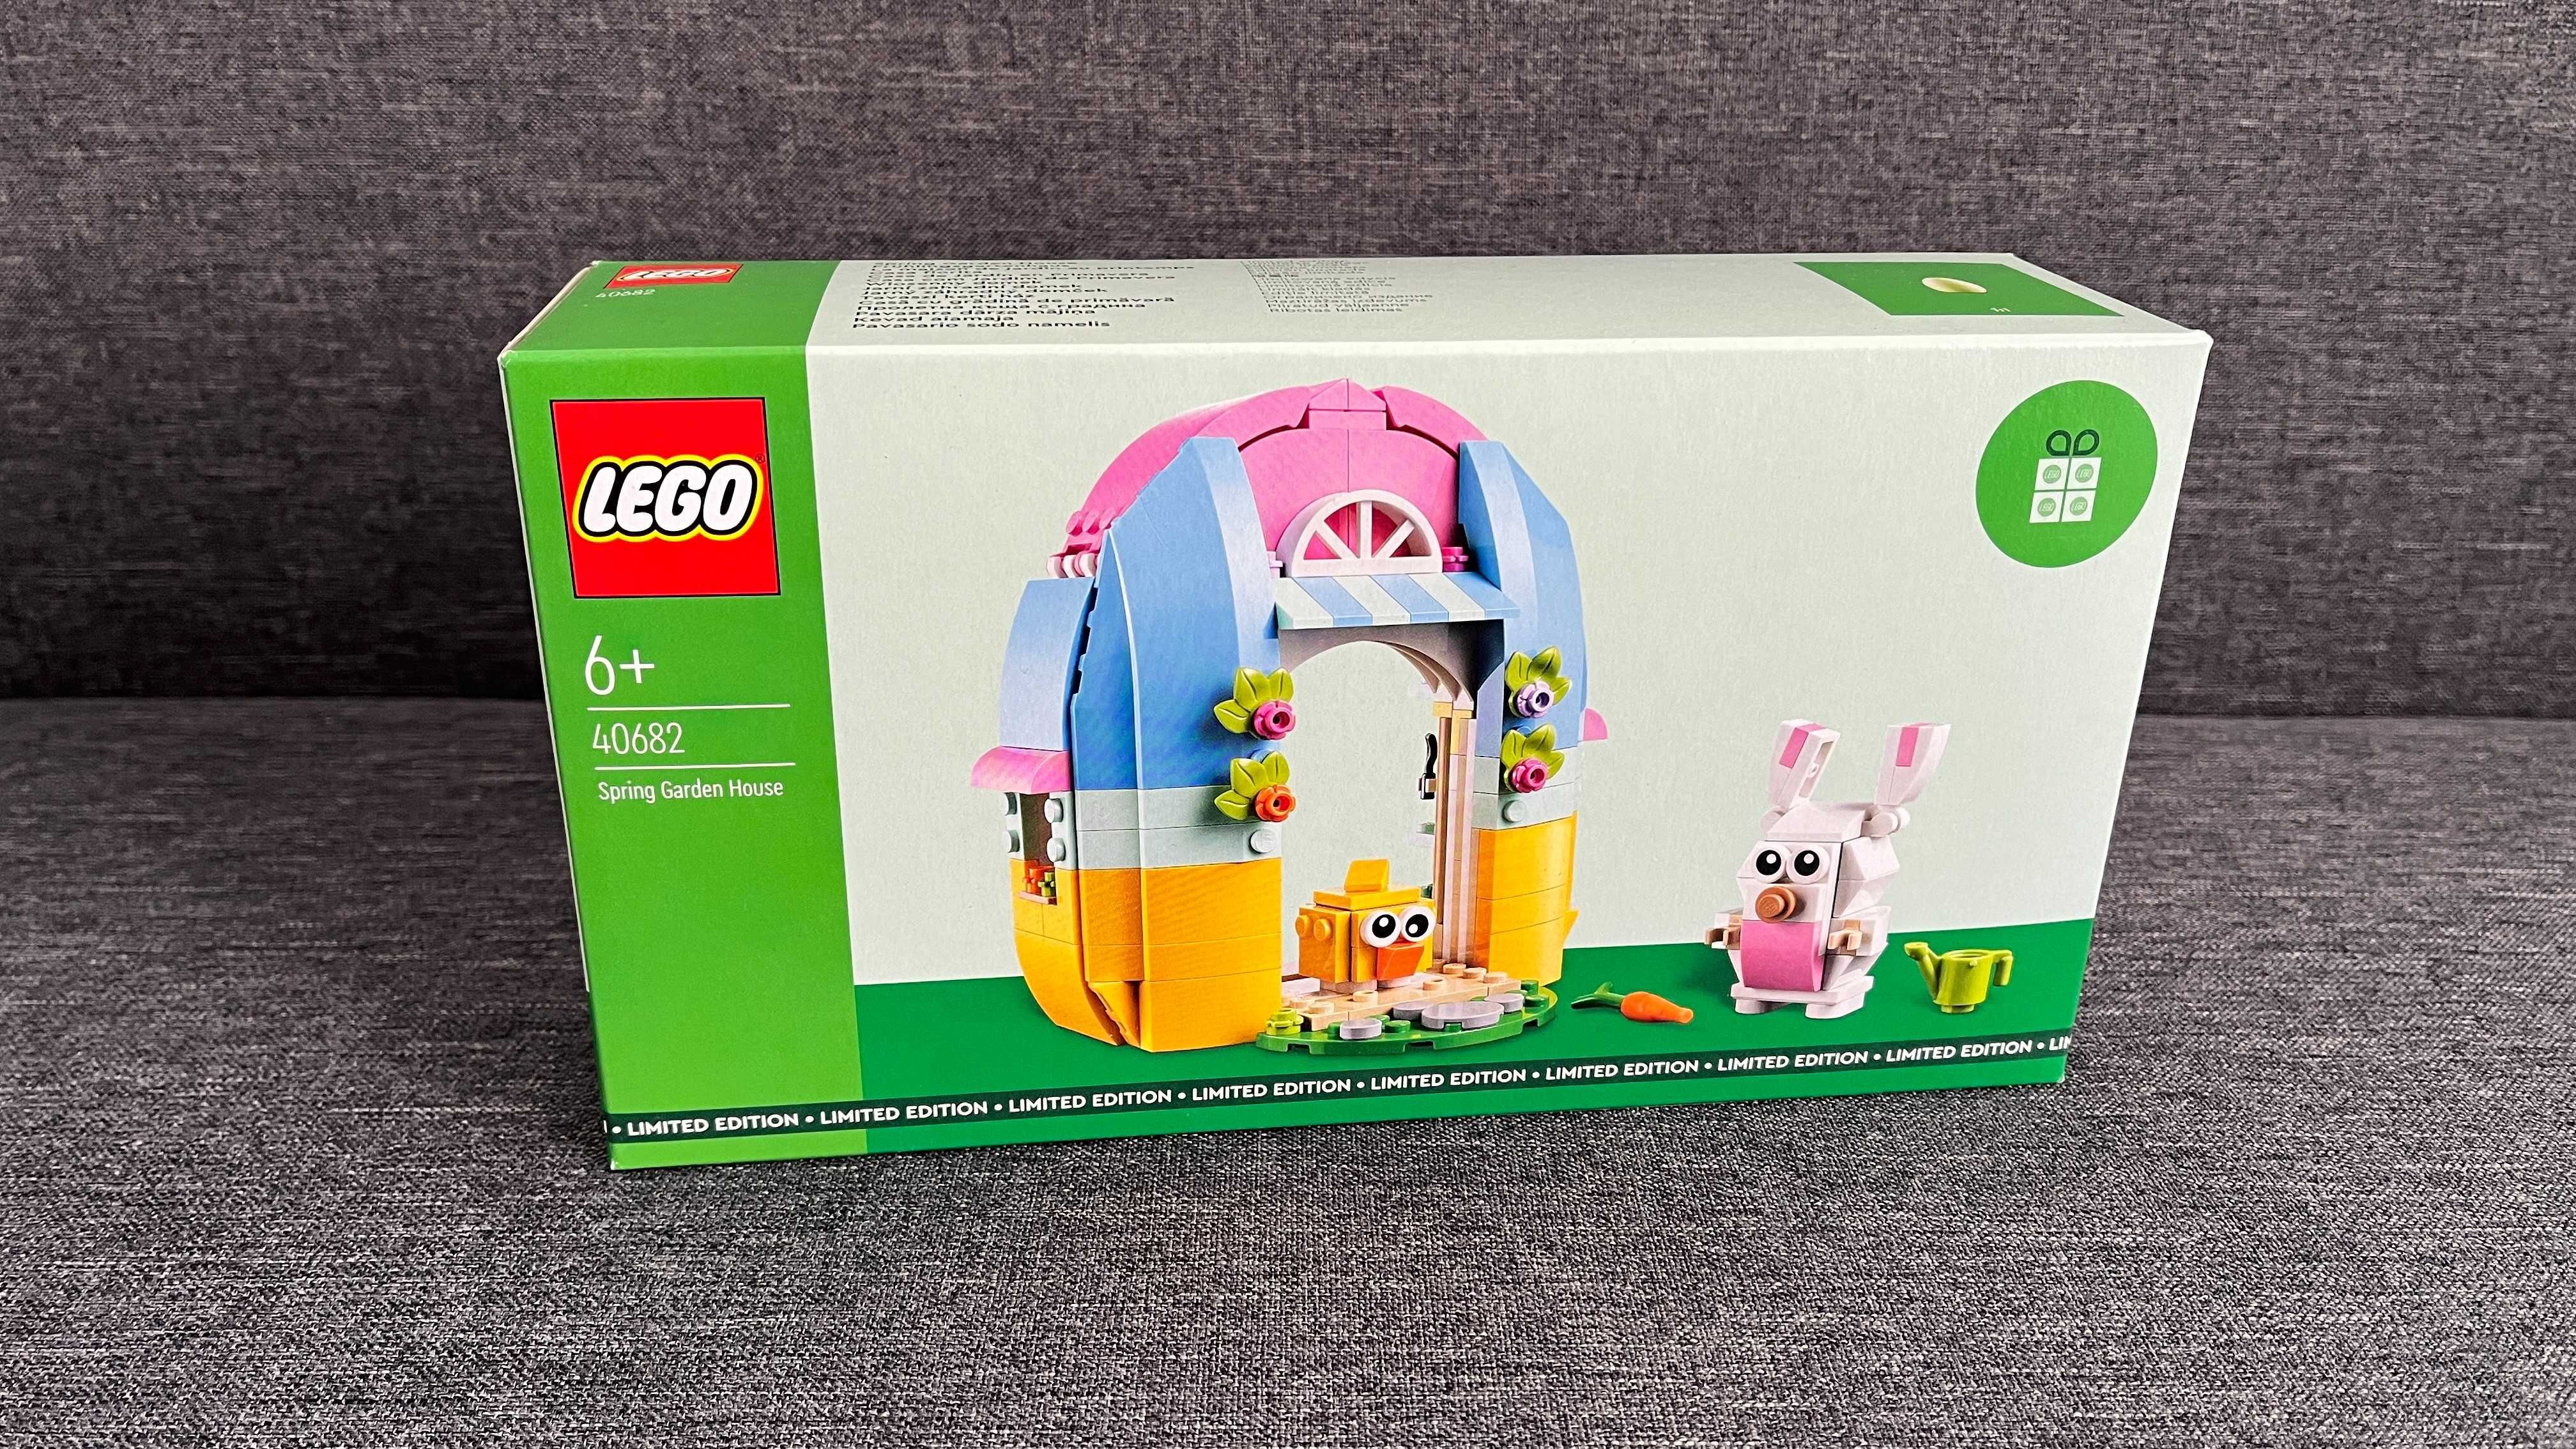 Lego Promotional - 40682 - Spring Garden House - SIGILAT